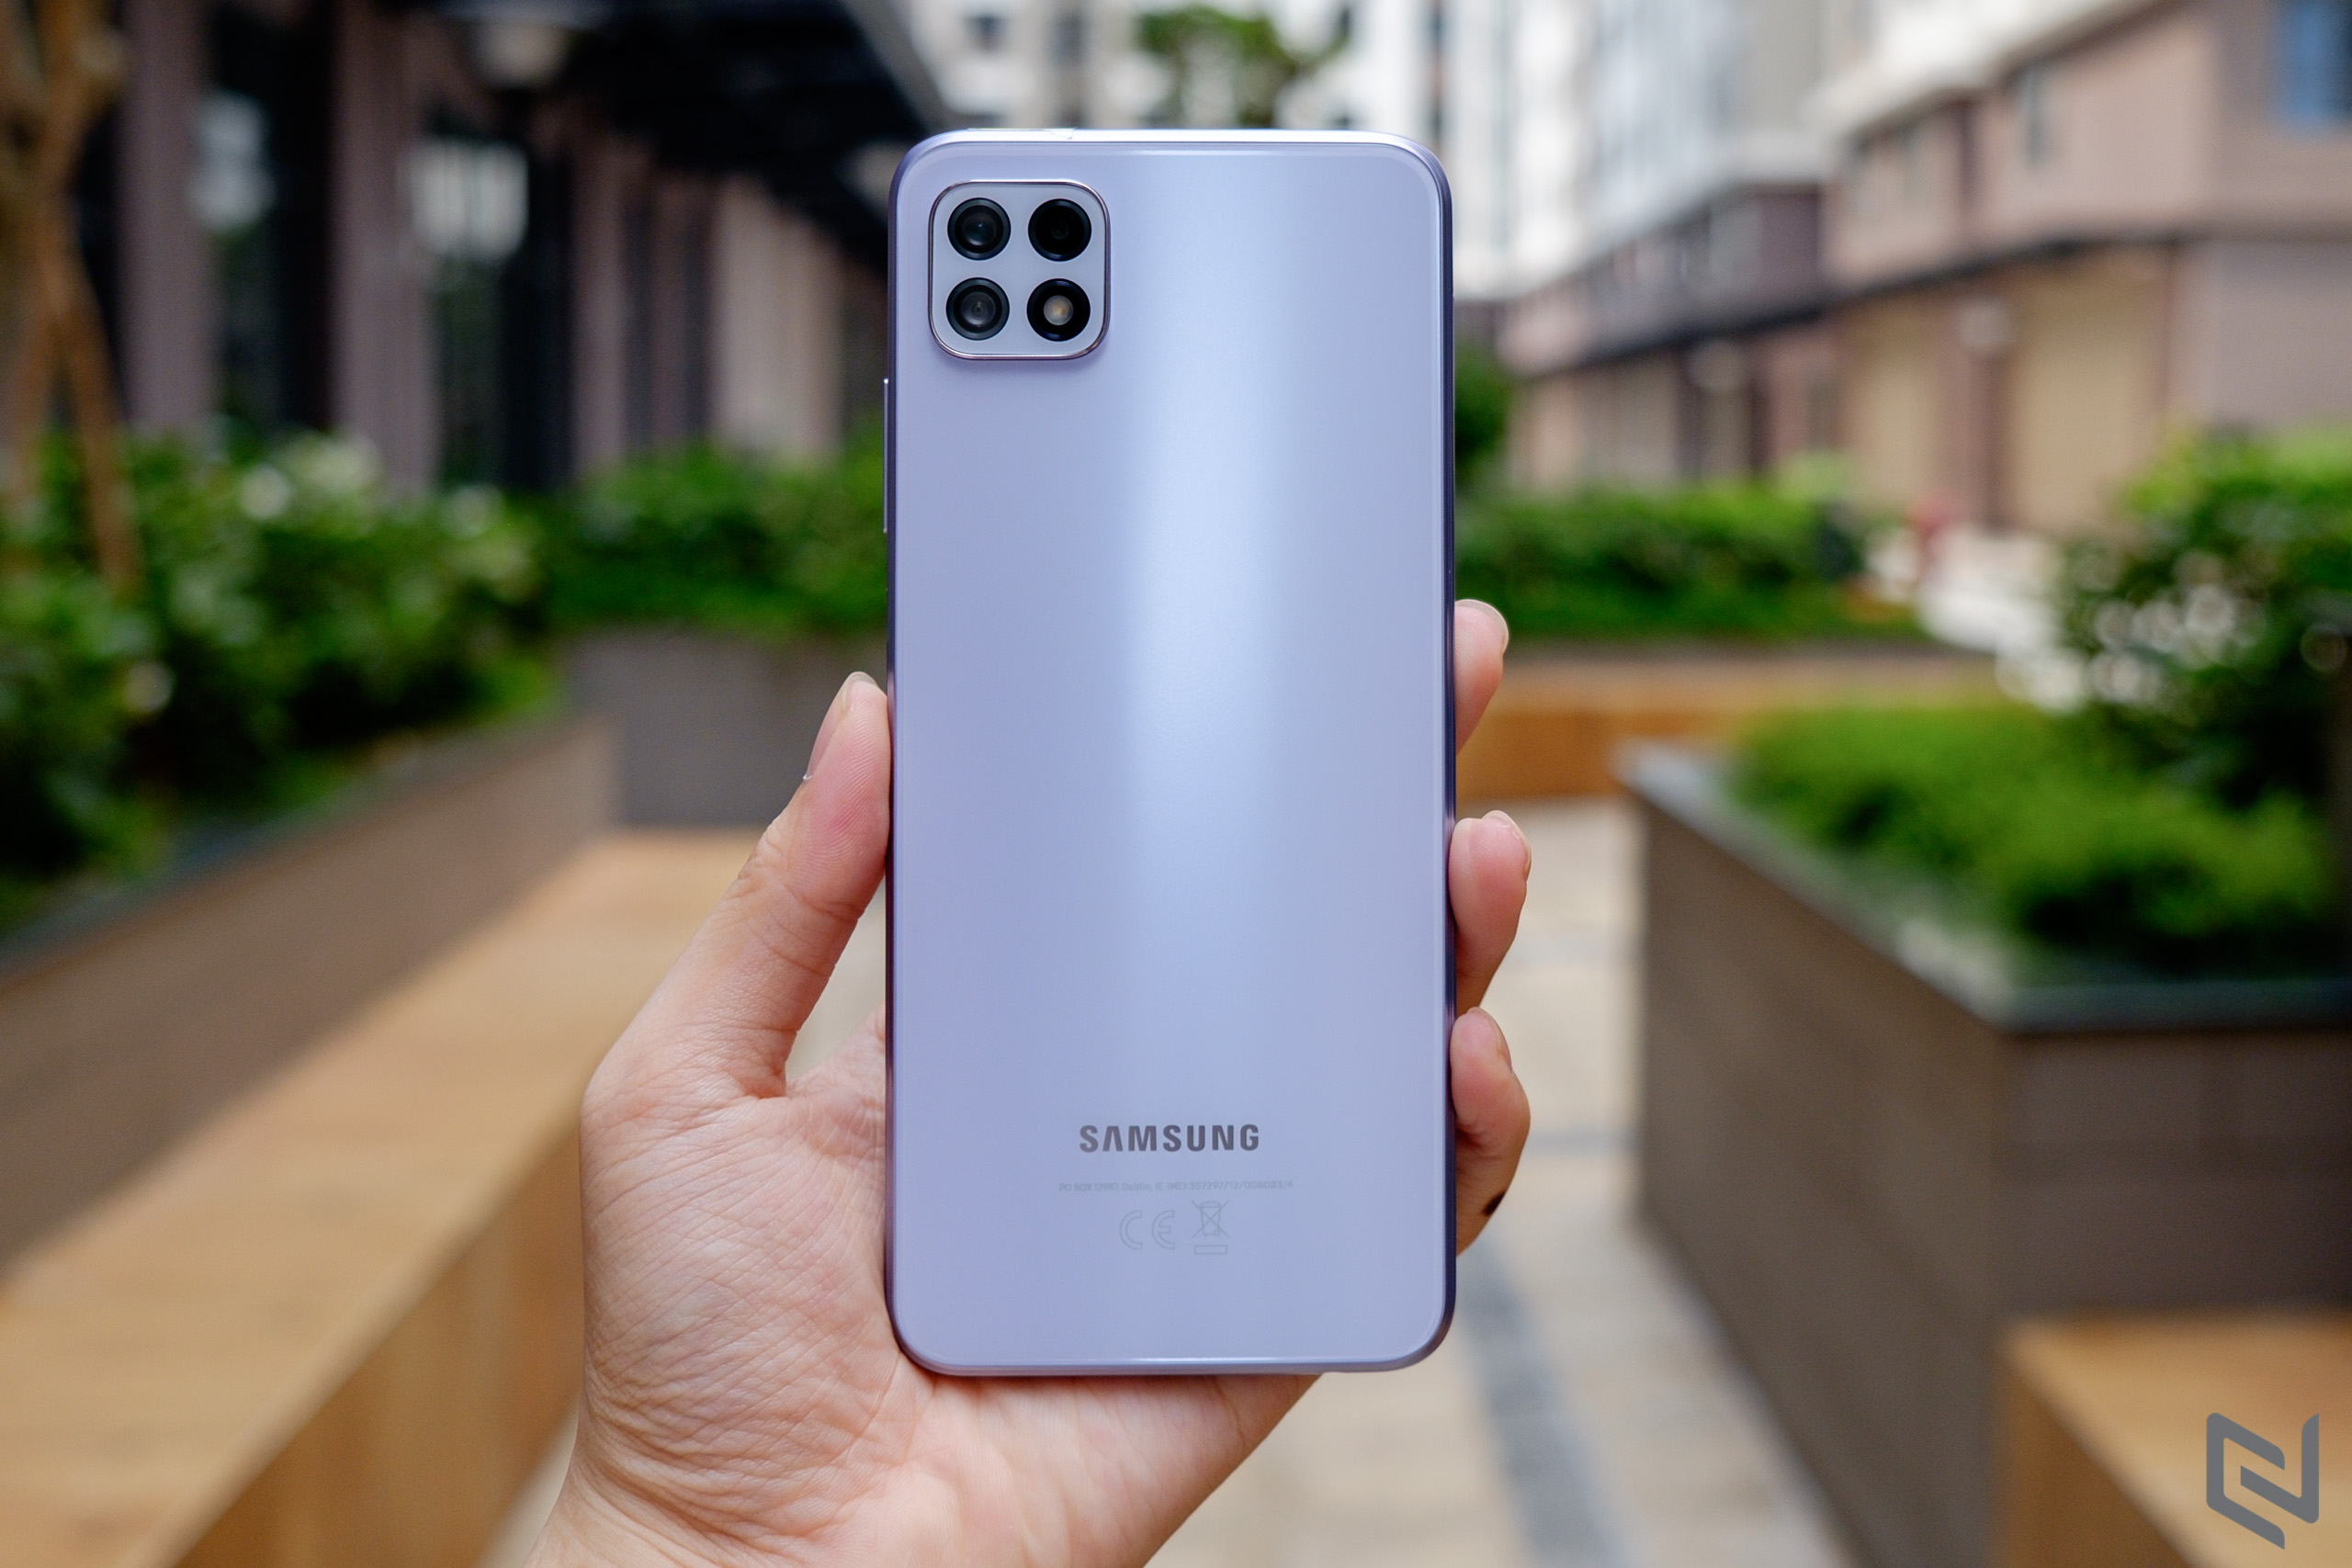 Samsung Galaxy A22 5G: Dáng vẻ thời thượng, hiệu năng cùng camera mạnh mẽ, kết nối 5G nổi bật